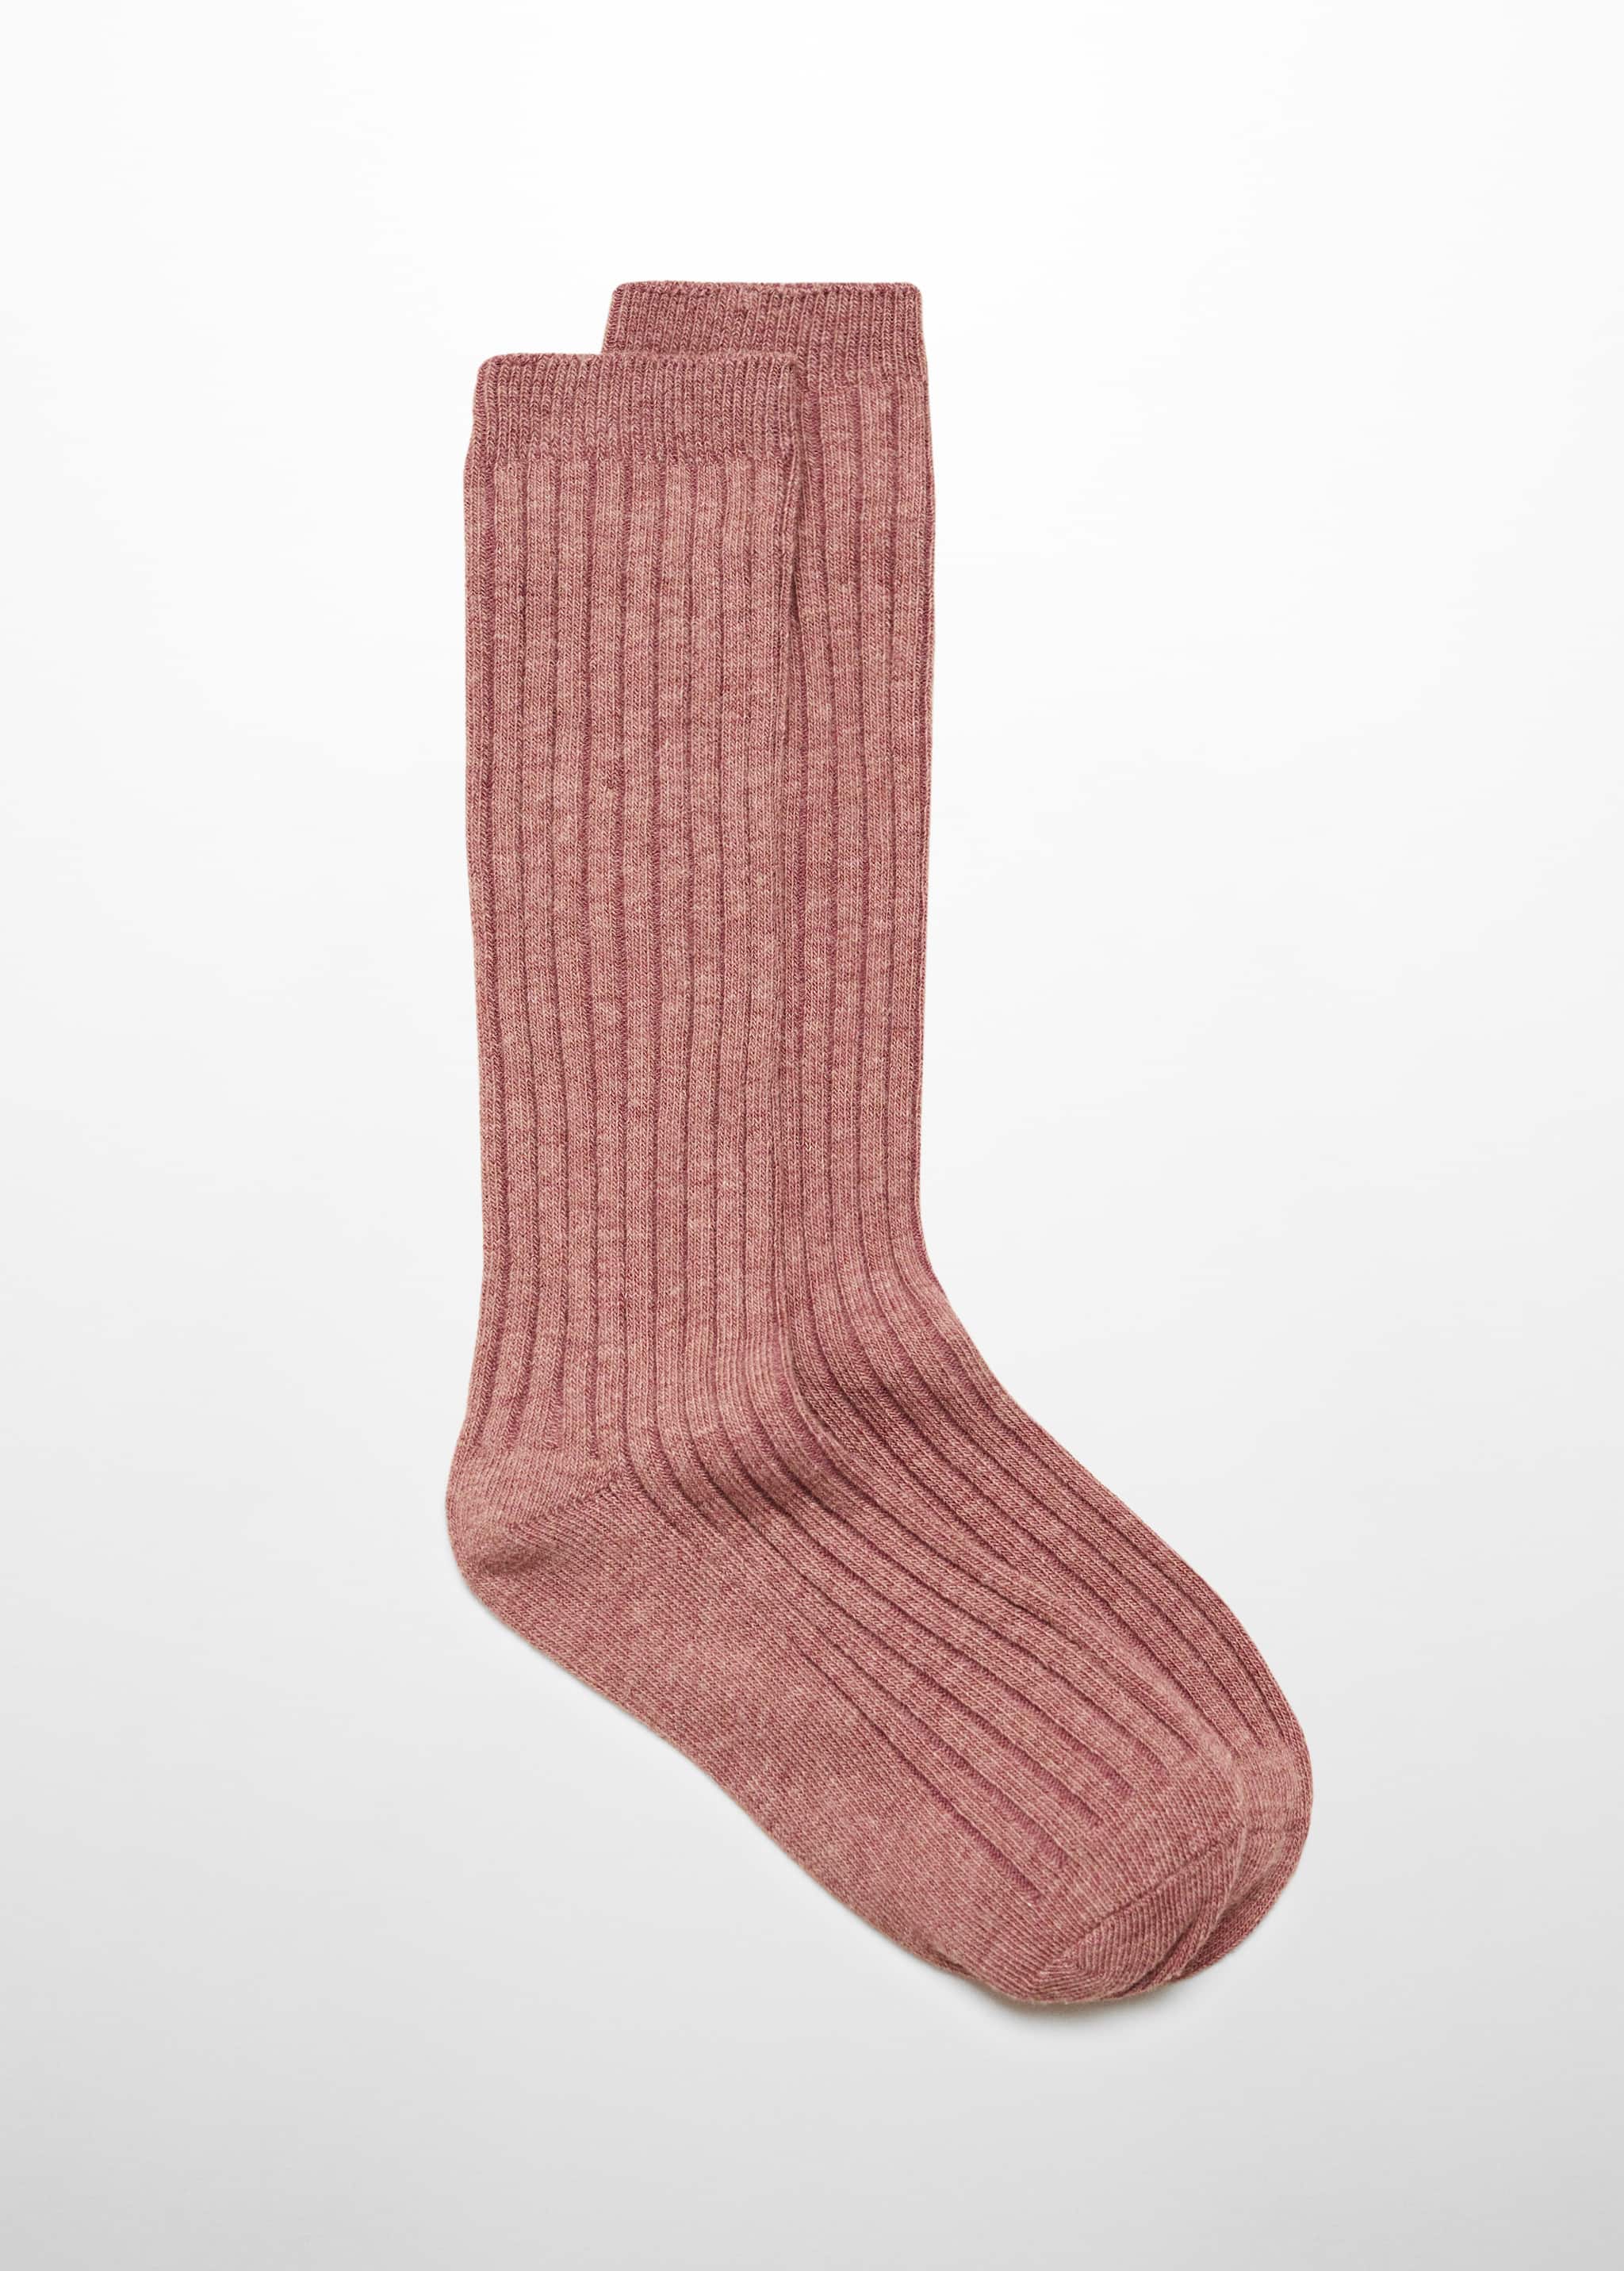 Трикотажные носки - Изделие без модели